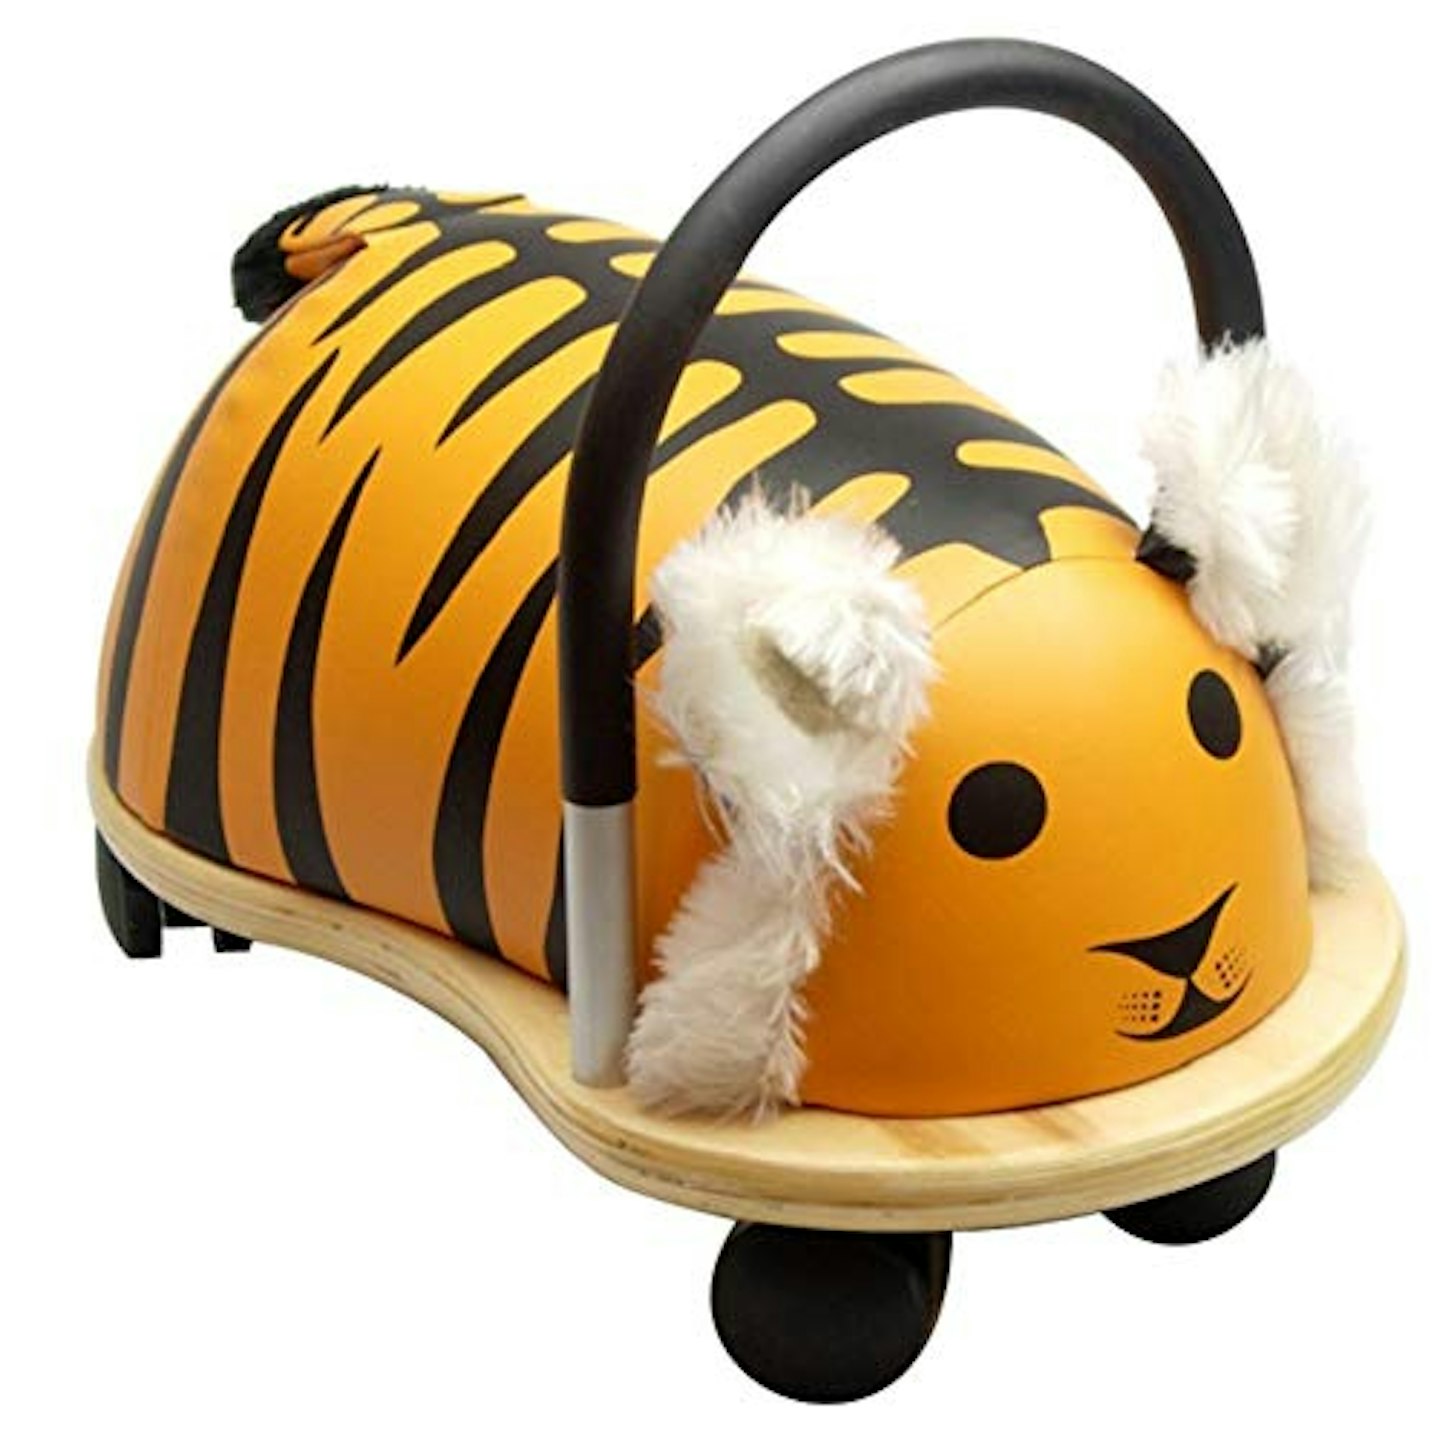 Wheelybug Toddler Ride On Tiger